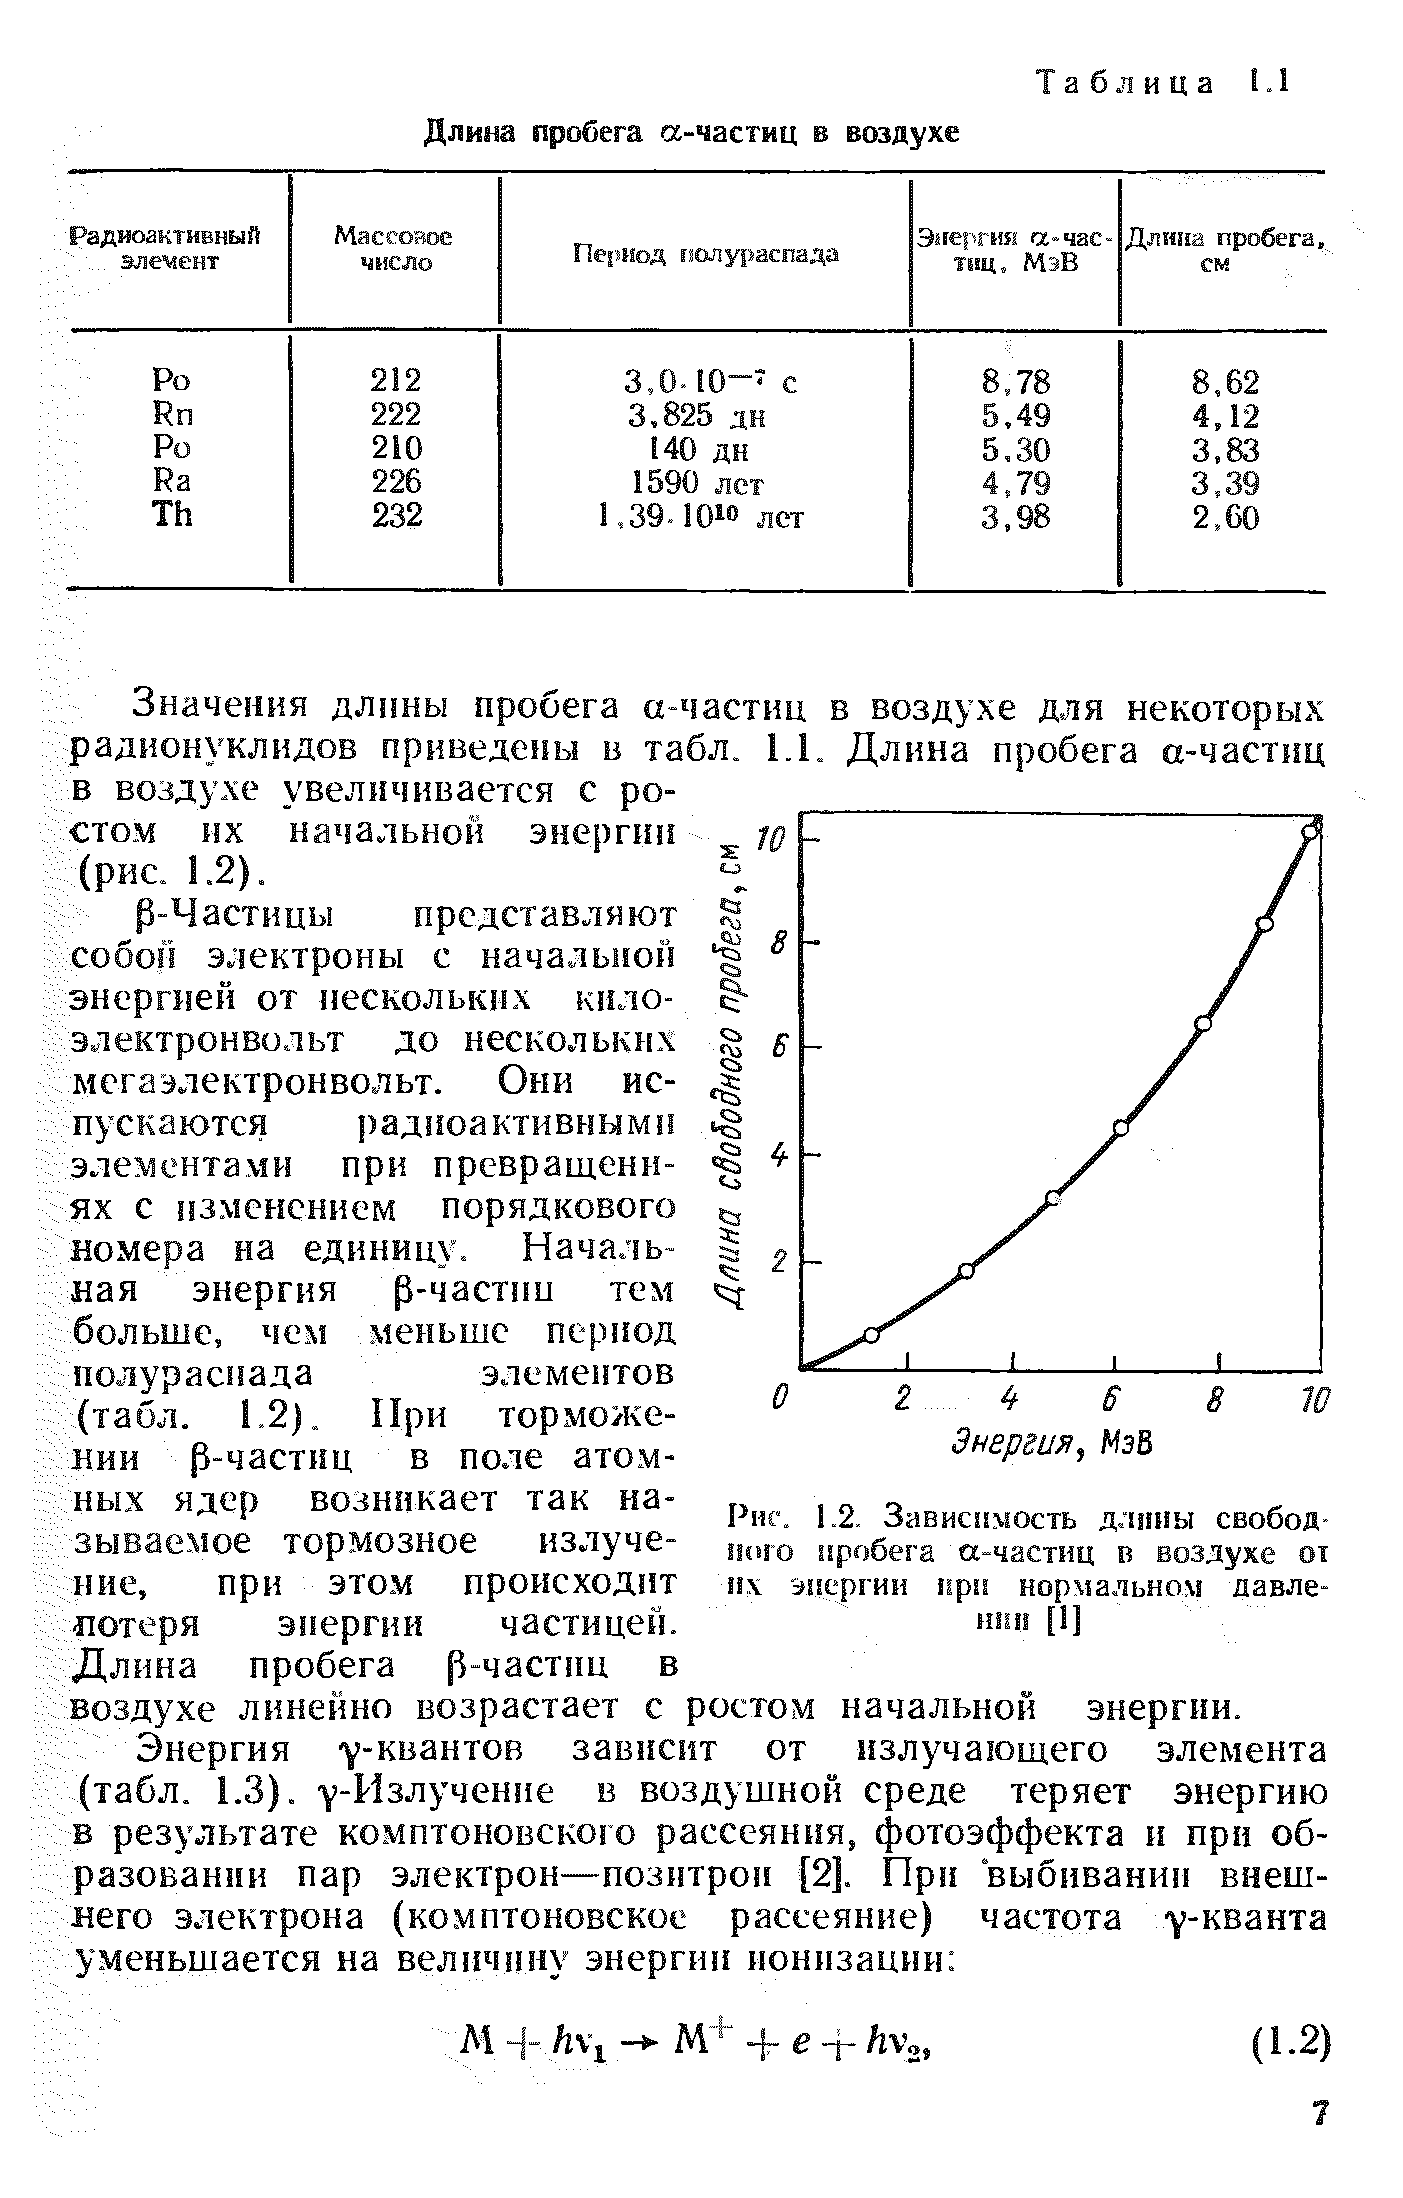 Значения длины пробега а-частиц в воздухе для некоторых радионуклидов приведены в табл. 1.1. Длина пробега а-частнц в воздухе увеличивается с ростом их начальной энергии (рис. 1.2).